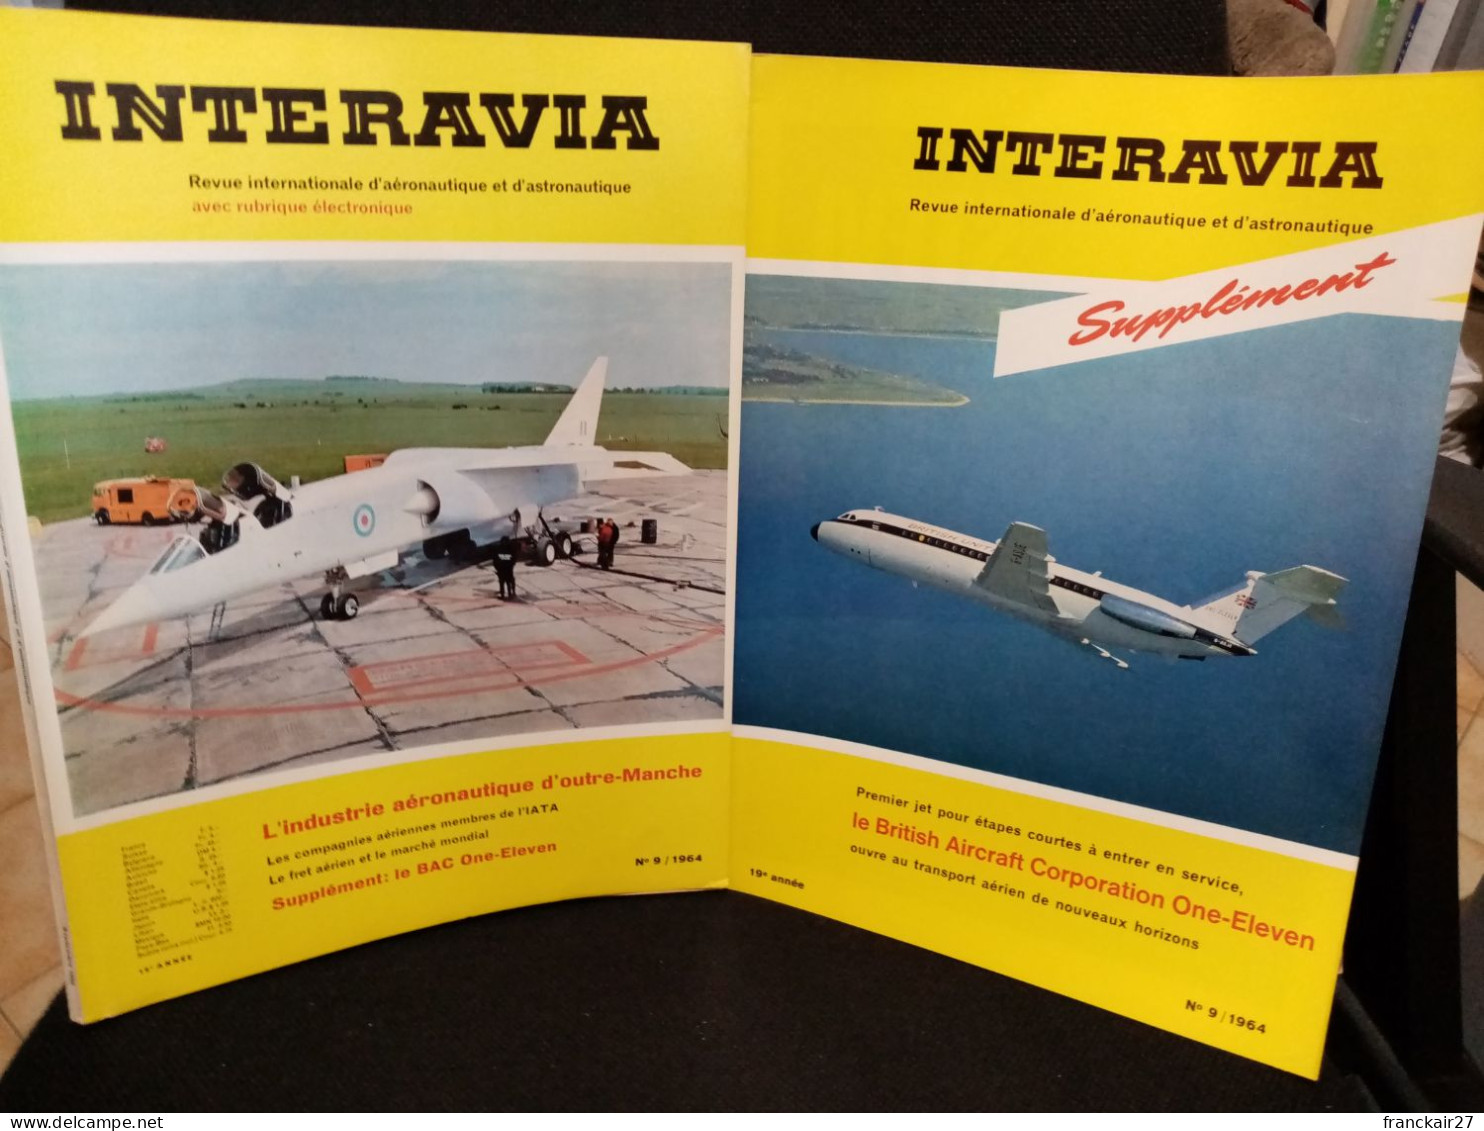 INTERAVIA 9/1964+ Supplément Revue Internationale Aéronautique Astronautique Electronique - Aviation